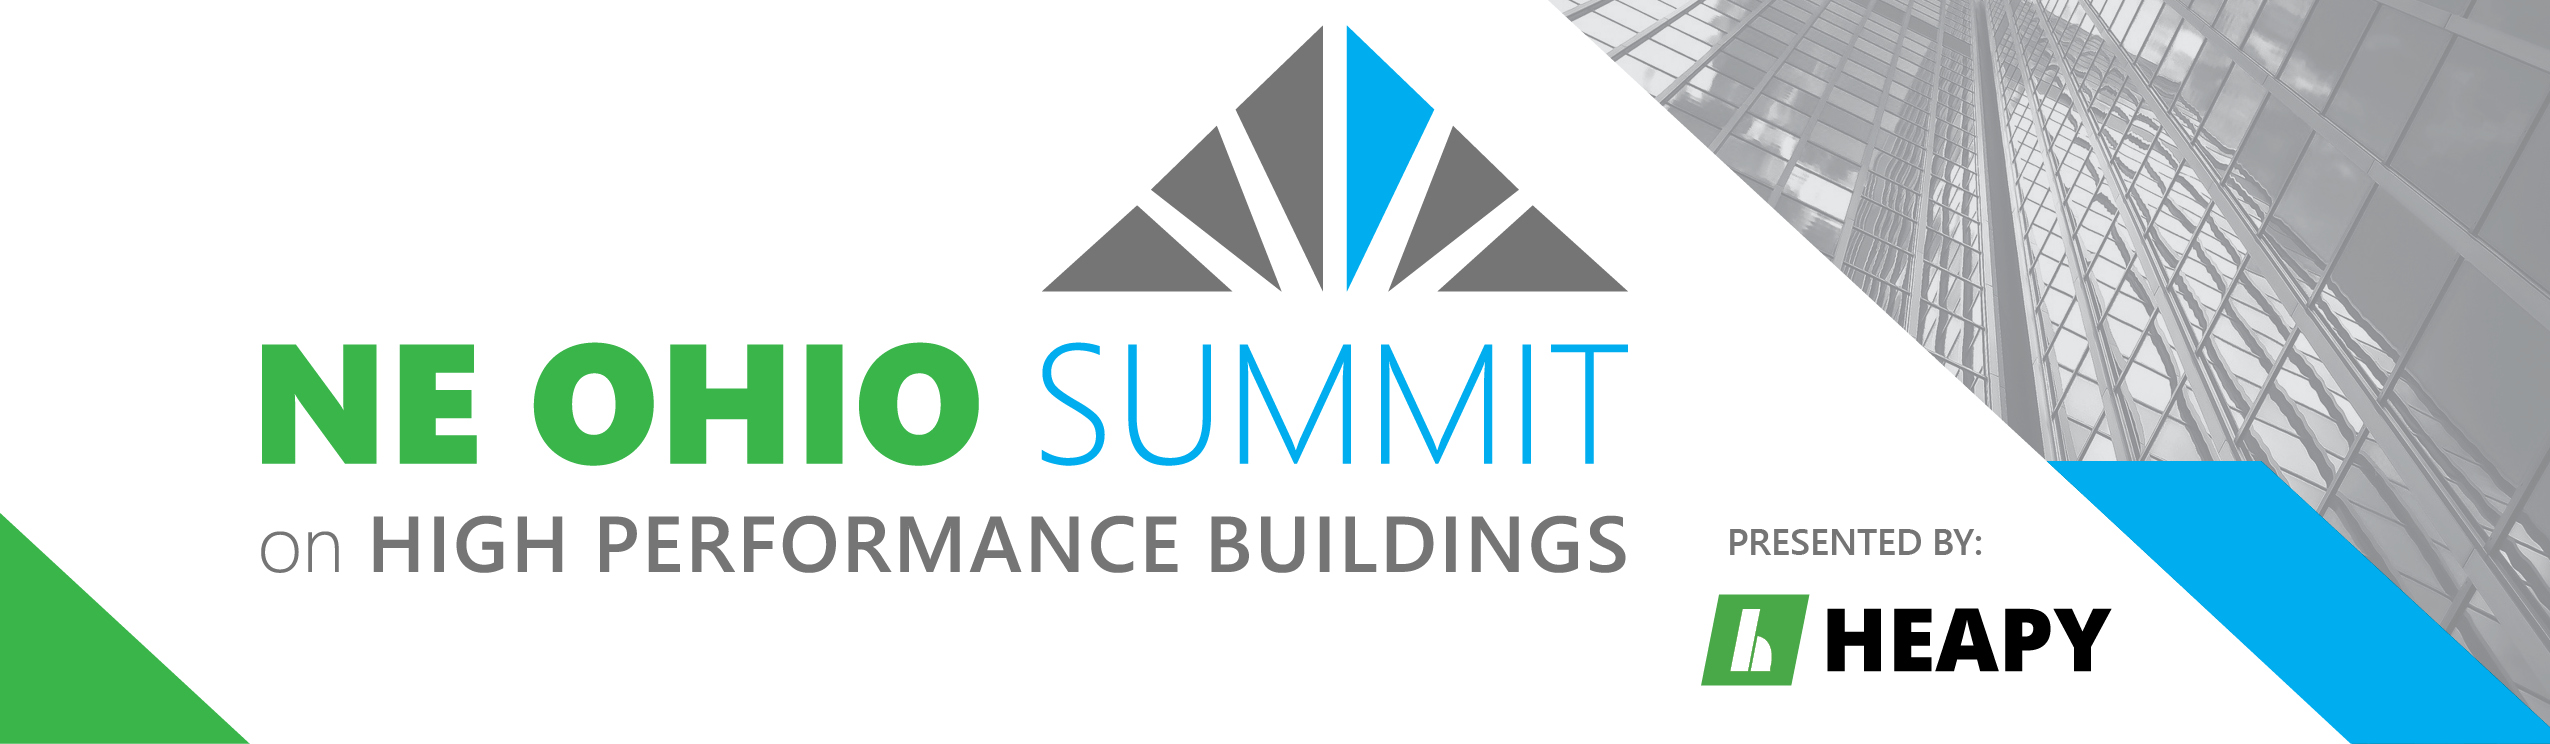 NE Ohio Summit on High Performance Buildings